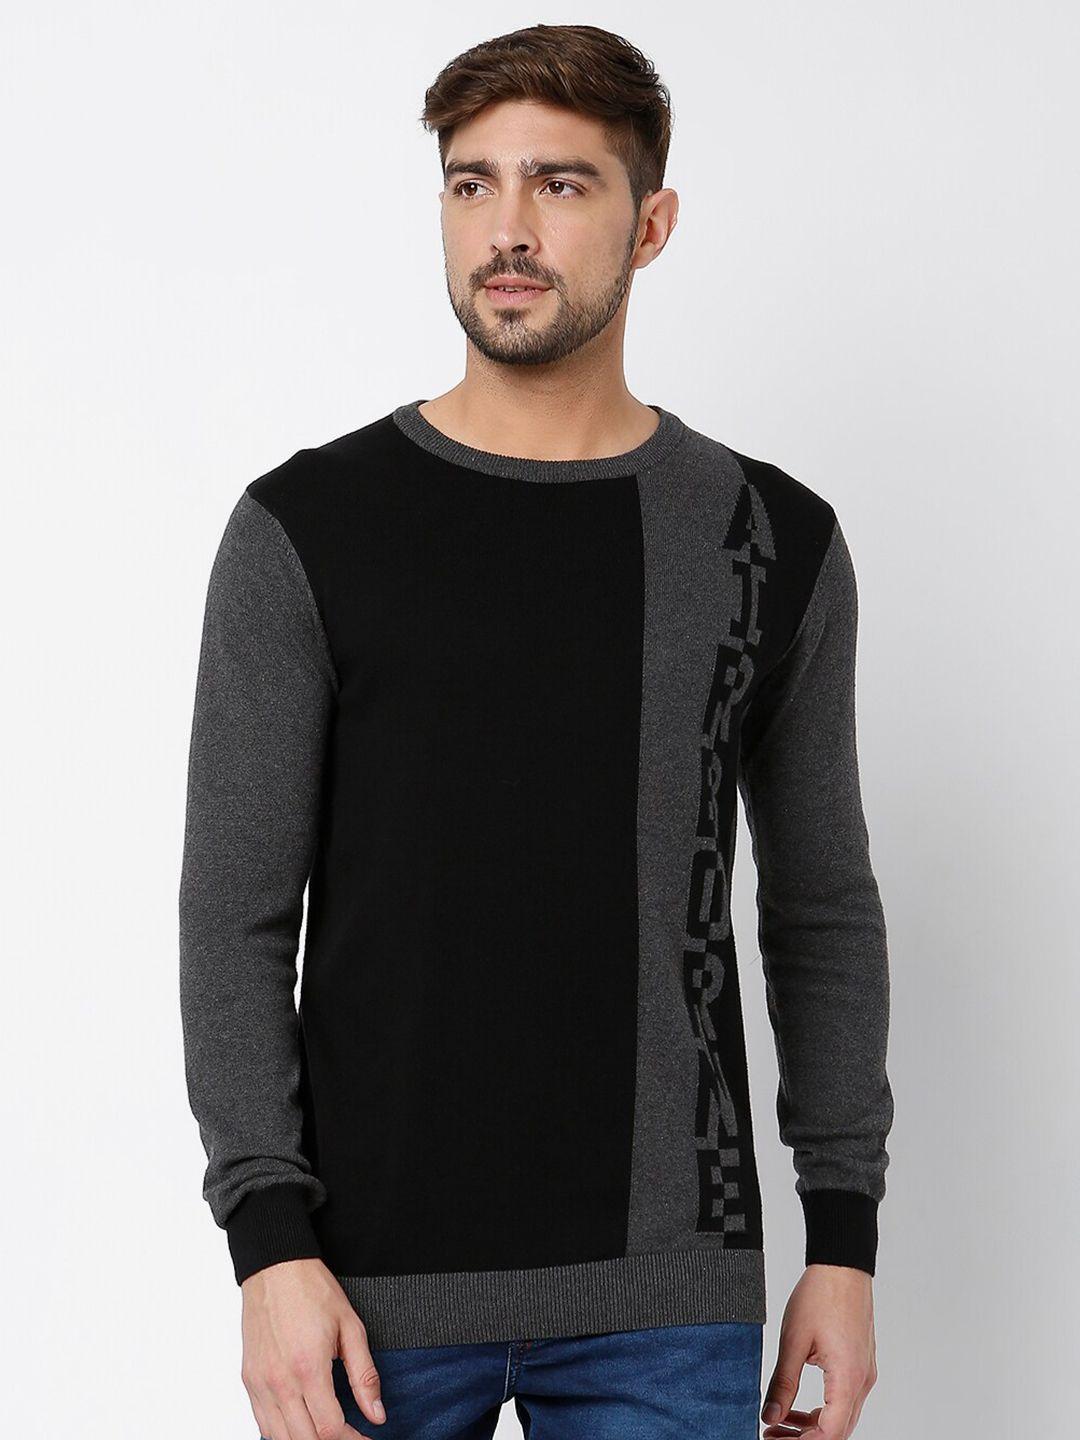 mufti-men-black-&-grey-colourblocked-pure-cotton-pullover